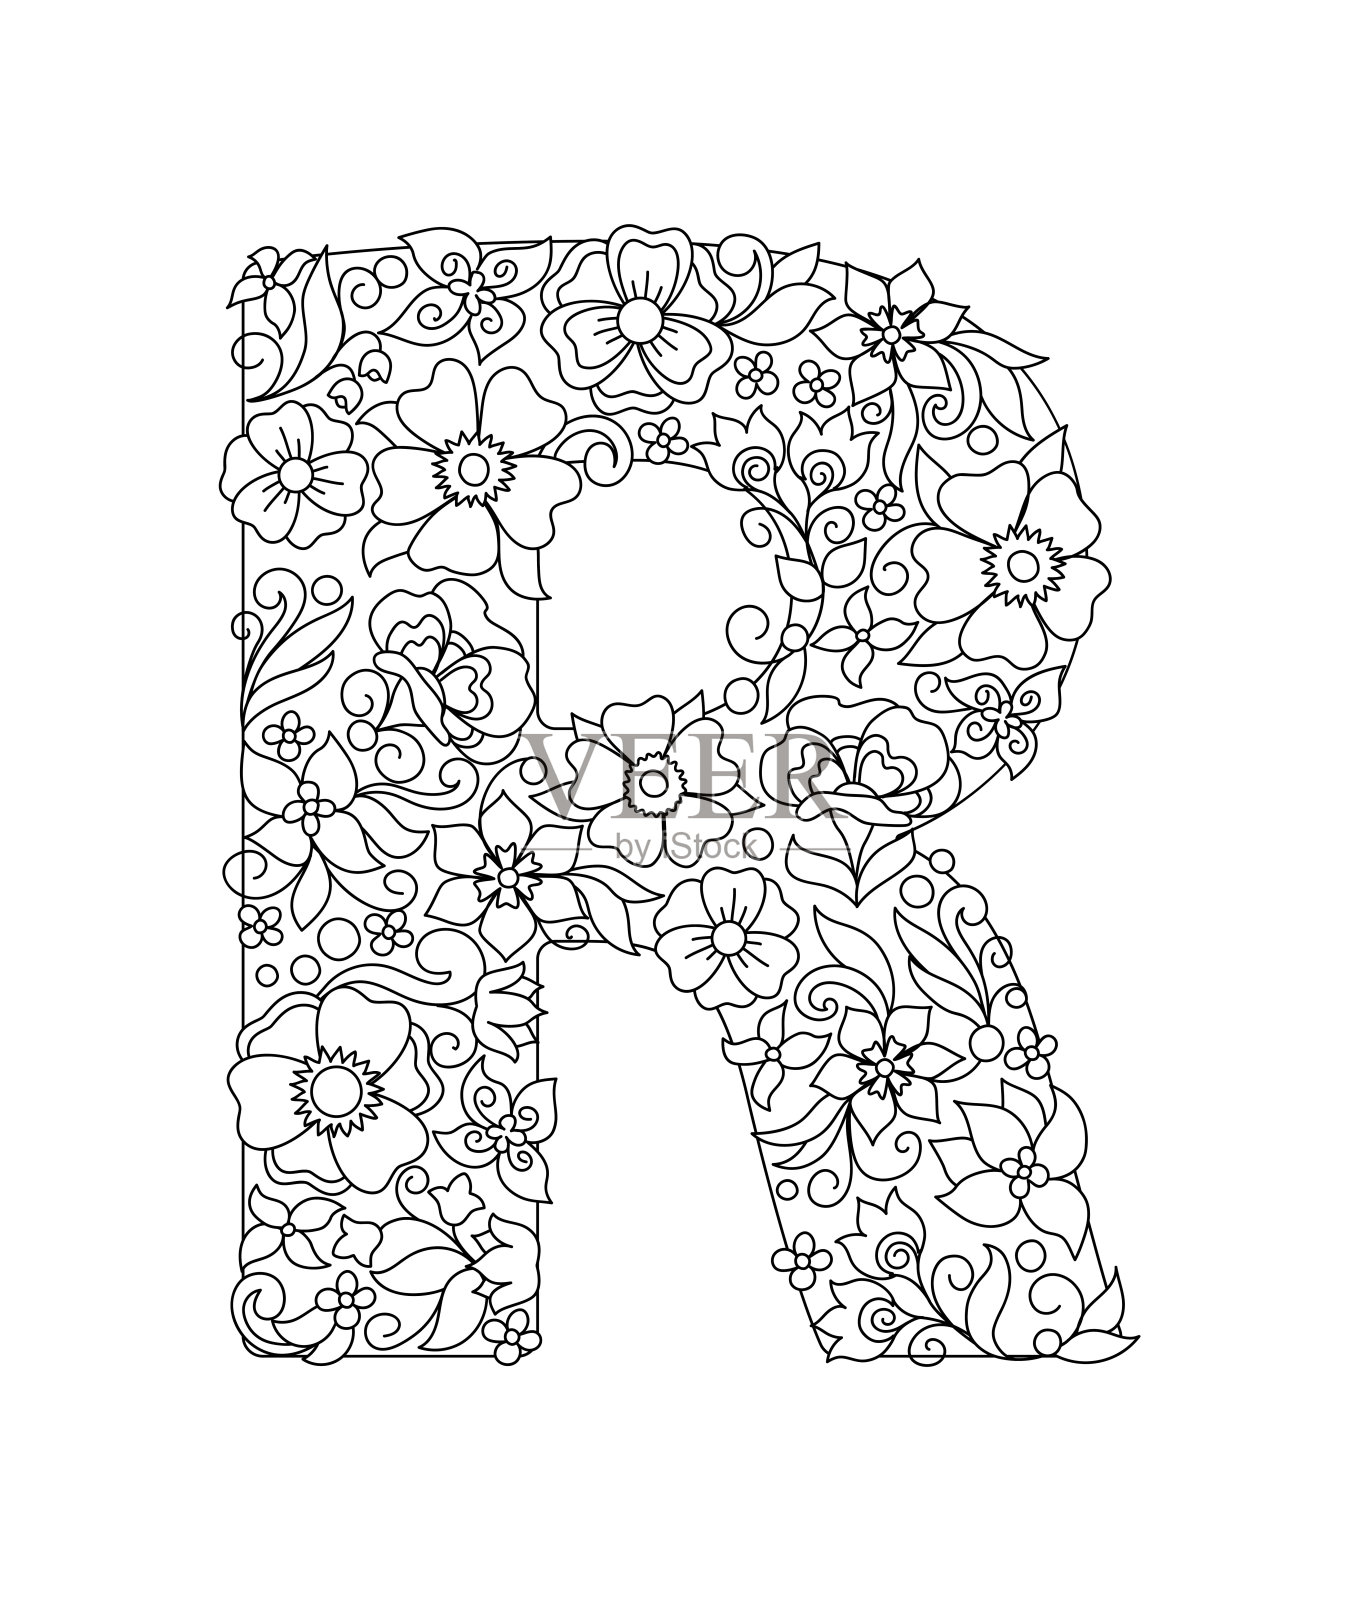 大写字母R与抽象的花图案设计元素图片